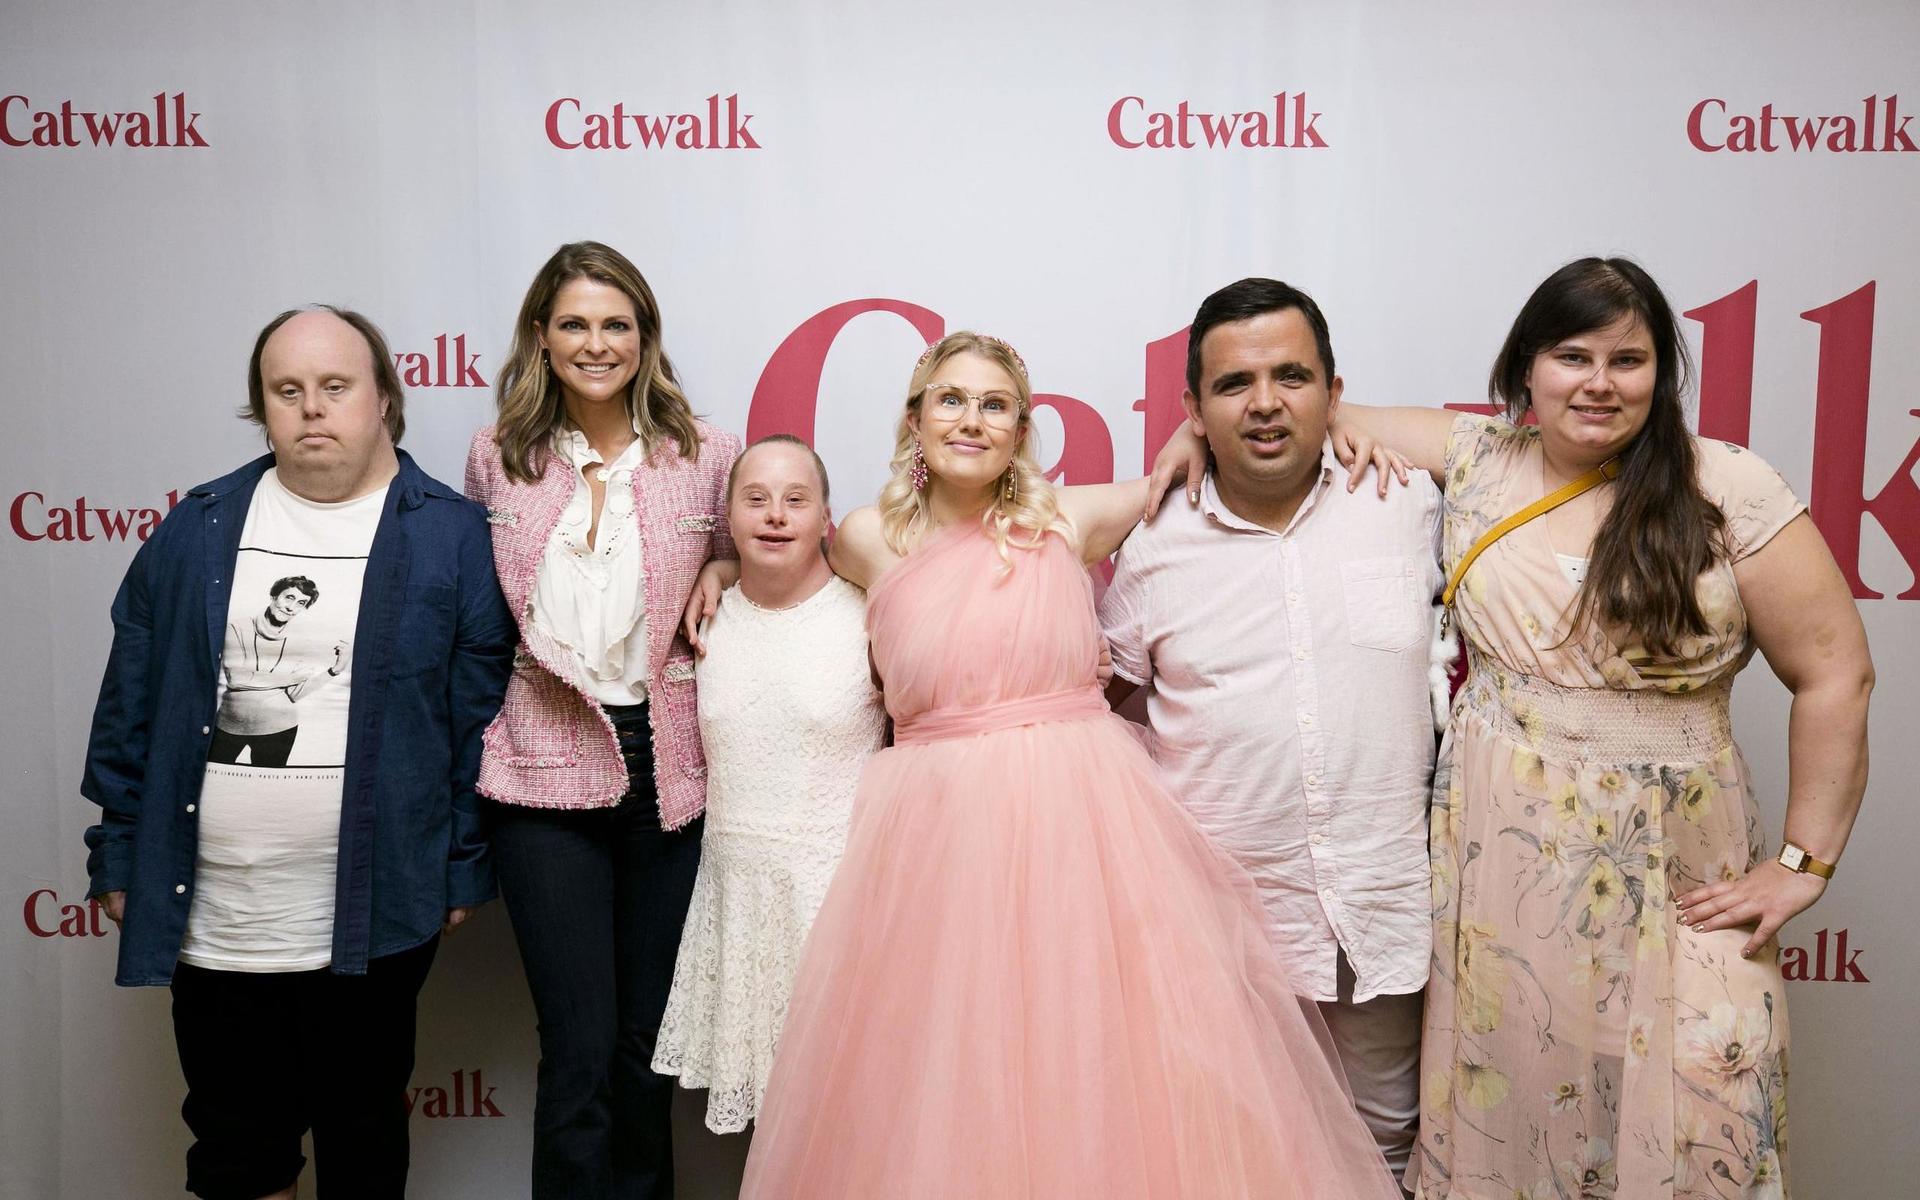 Dokumentärfilmen Catwalk följer Niklas Hillberg, Ida Johansson, Emma Örtlund, Alexander Rådlund och Kitty Jonsson under deras resa till modeveckan i New York. Där träffade de också prinsessan Madeleine.